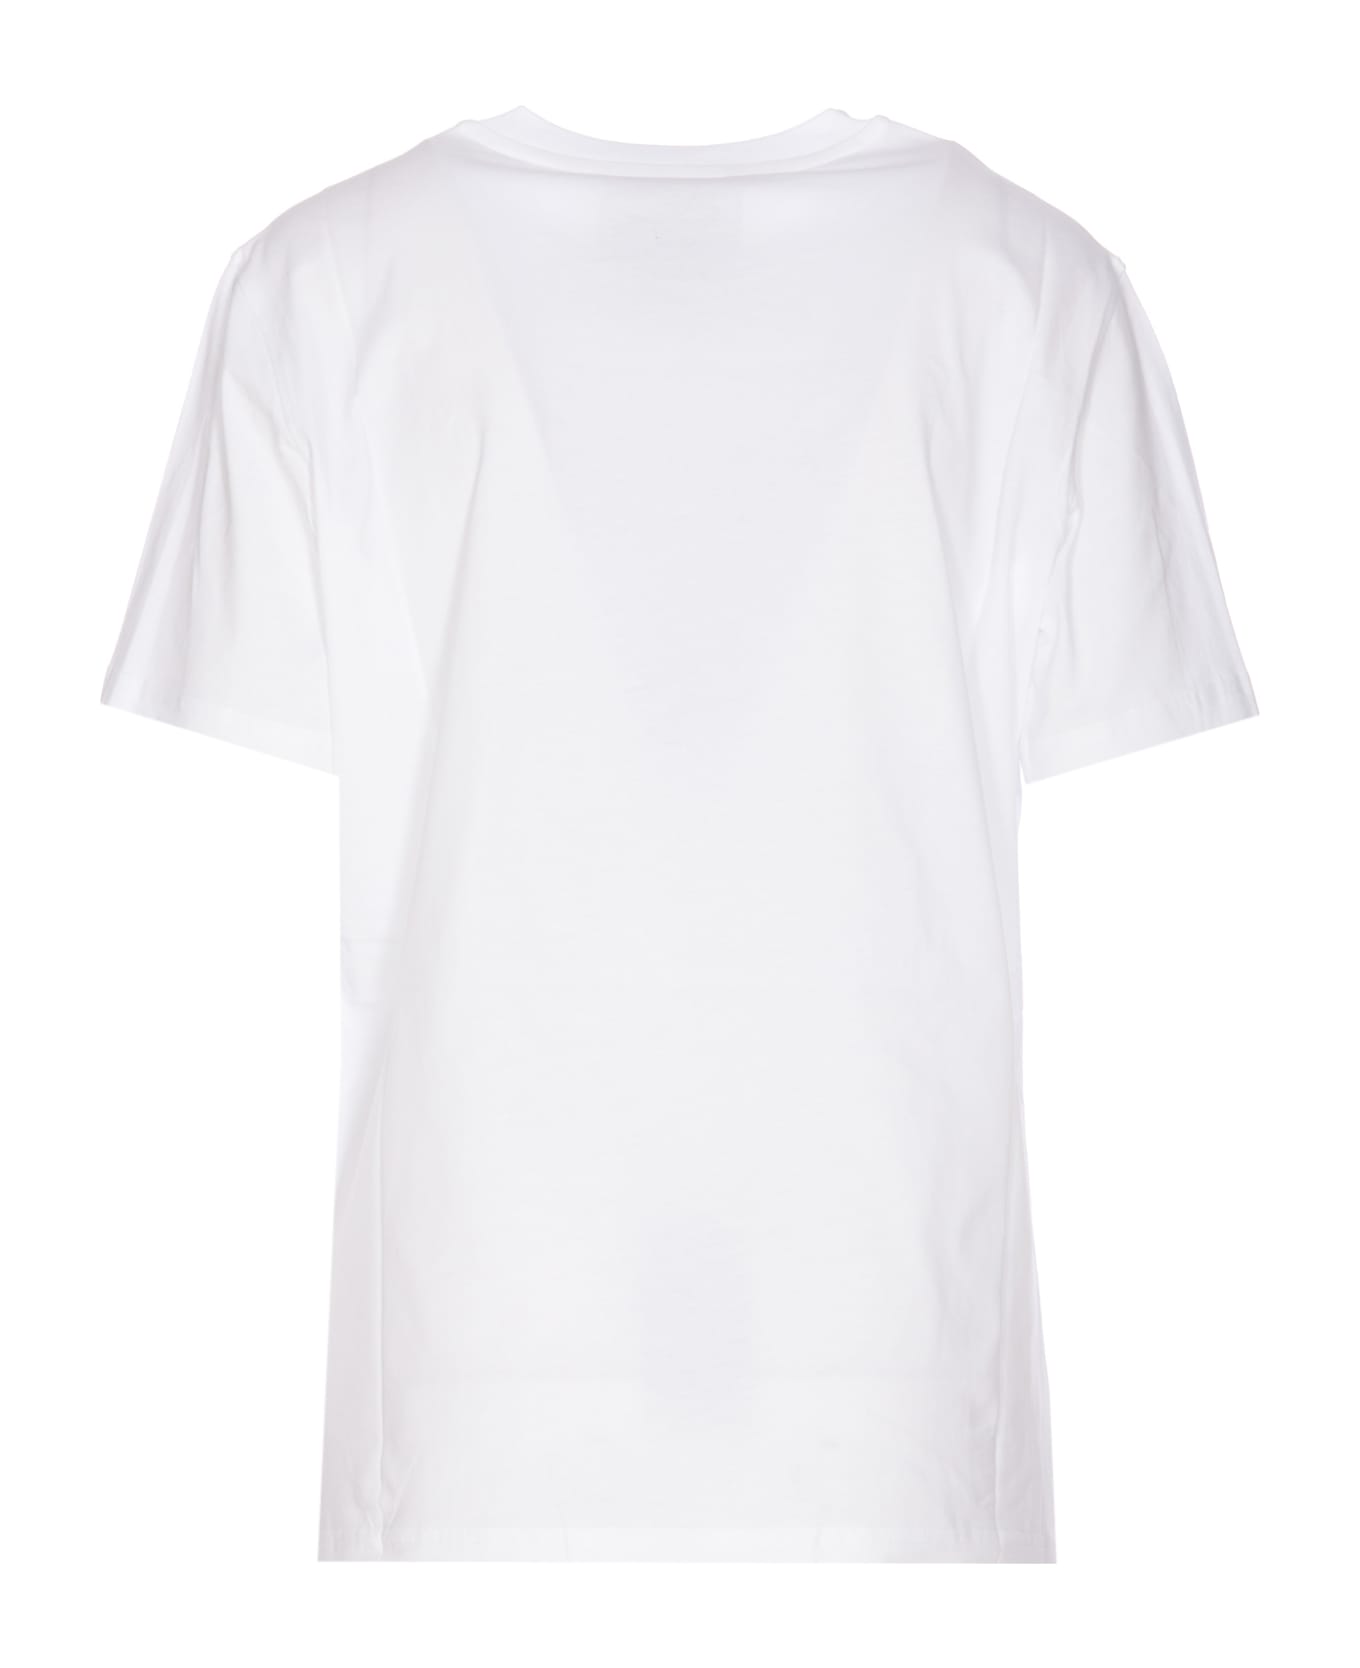 Moschino Love We Trust T-shirt - White Tシャツ